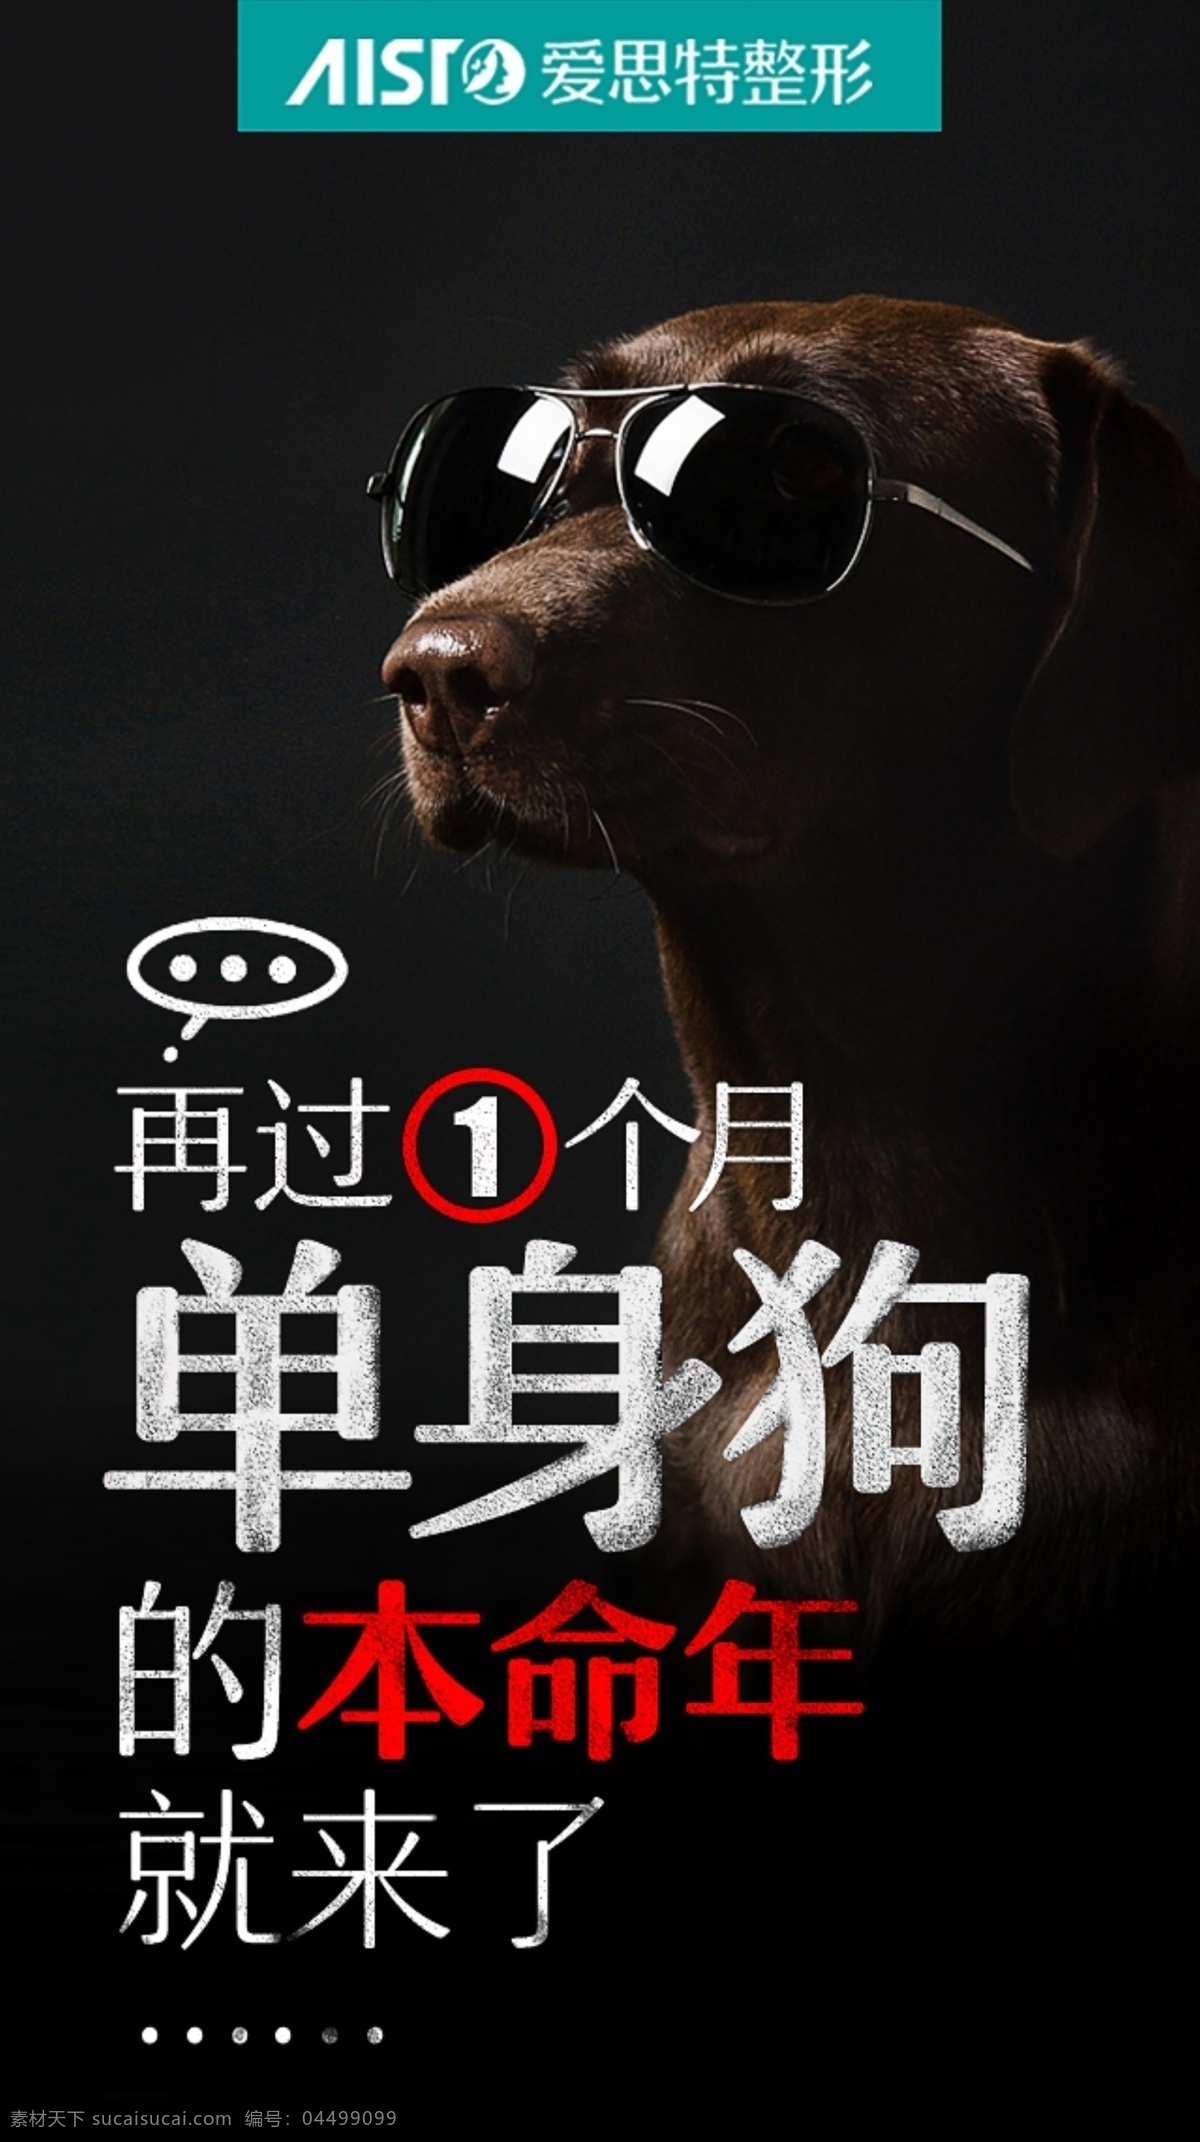 微信创意图 创意 朋友圈 单身狗 单身 黑色 墨镜 本命年 banner 移动界面设计 手机界面